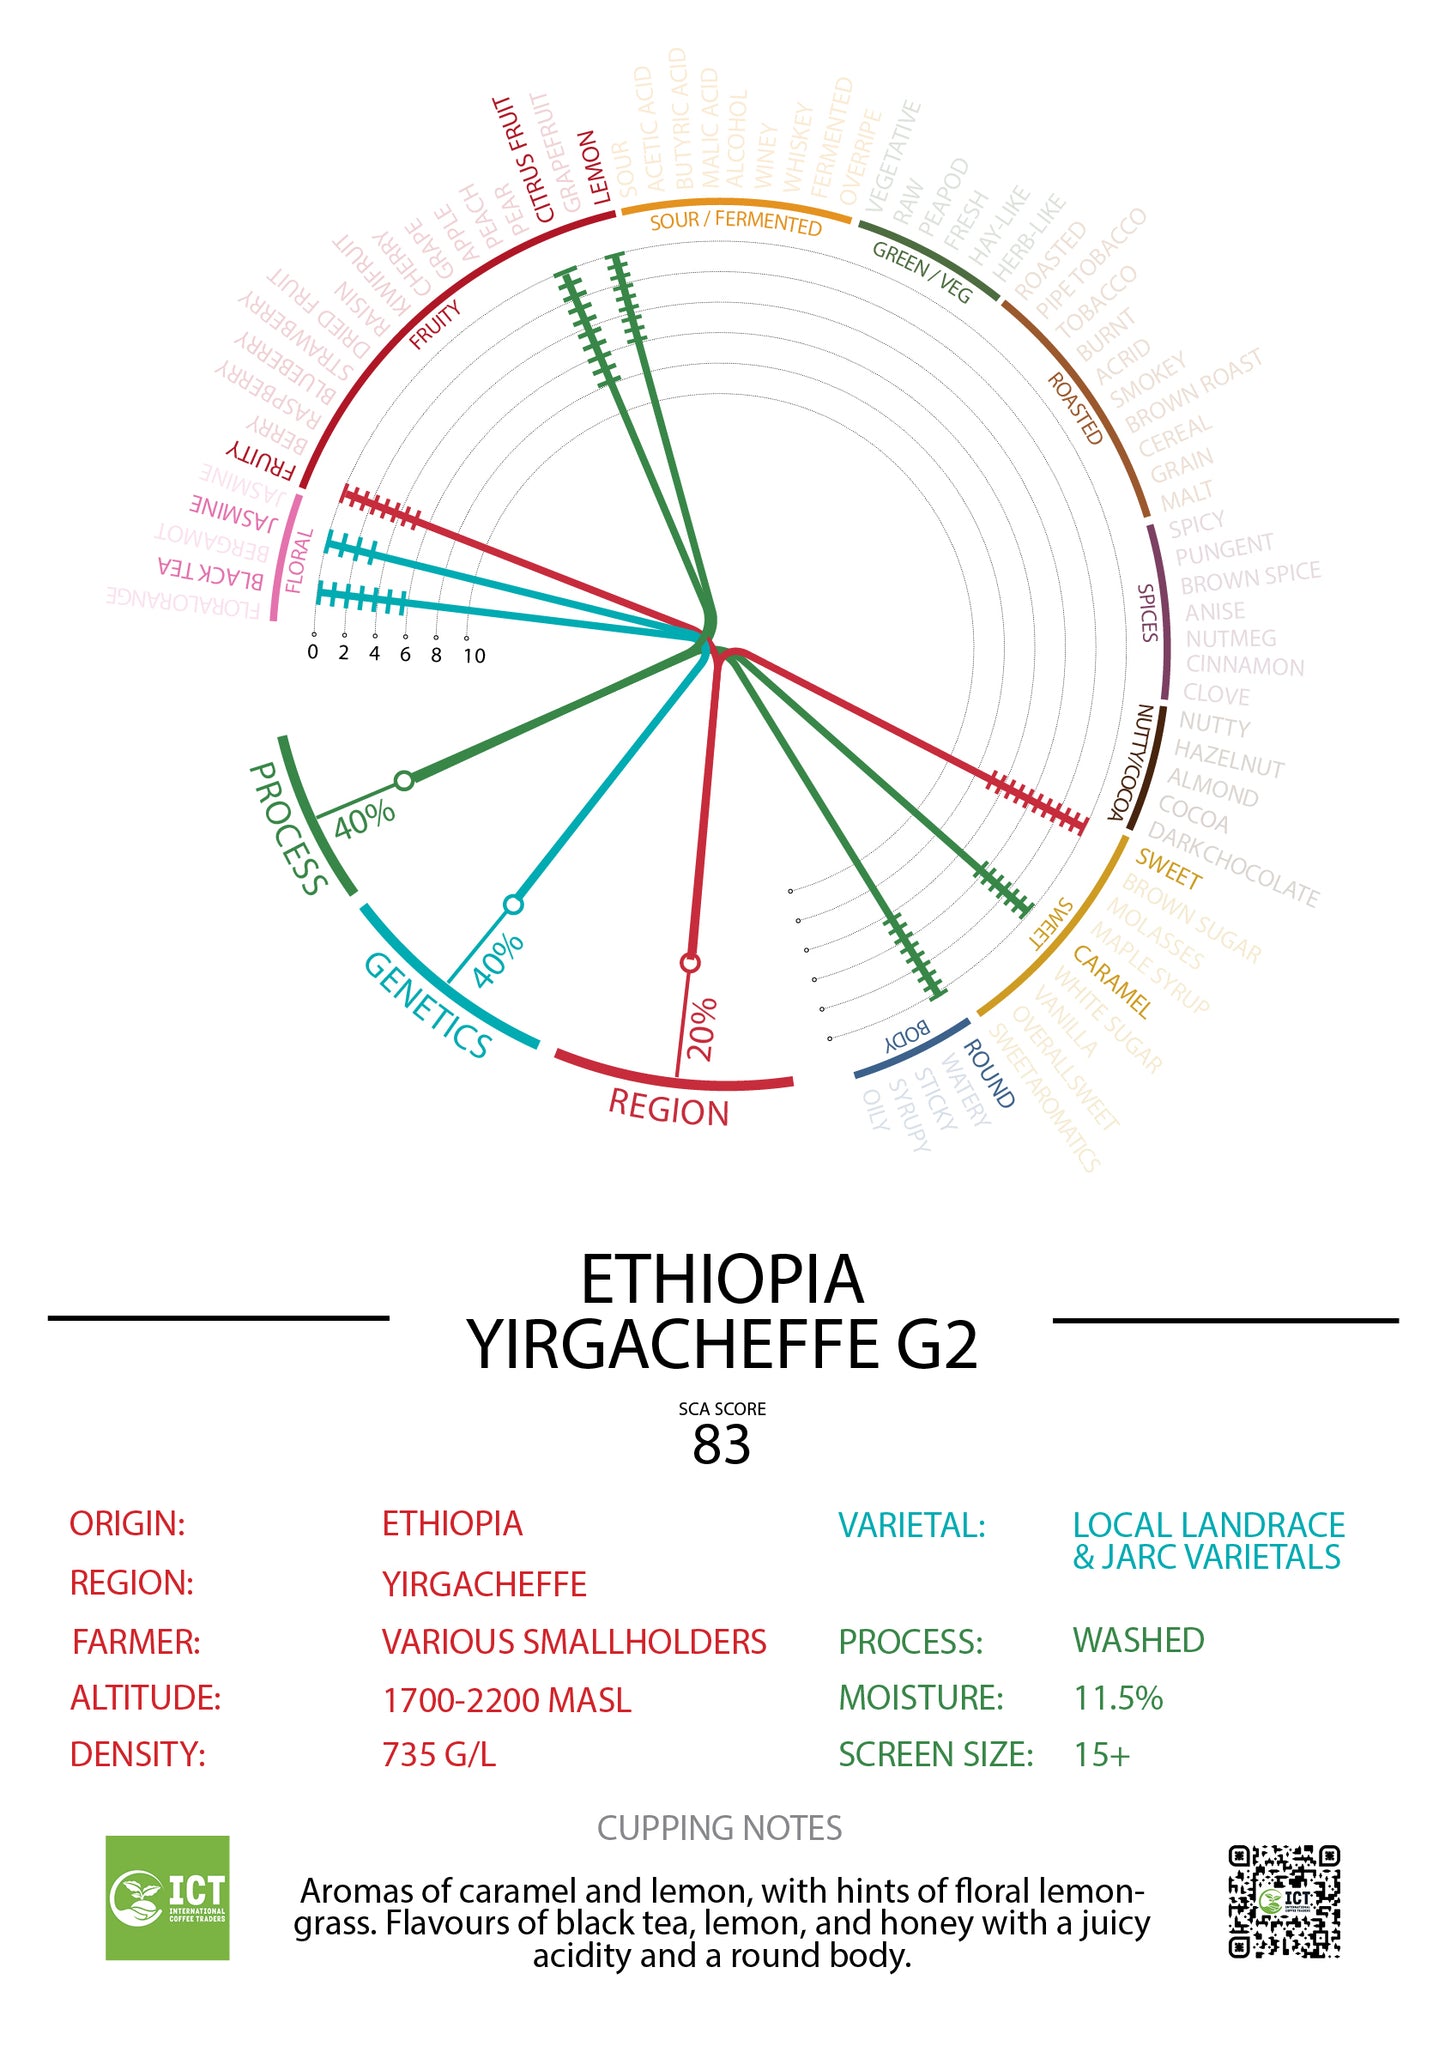 Ethiopia - Yirgacheffe - "Grade 2" Washed